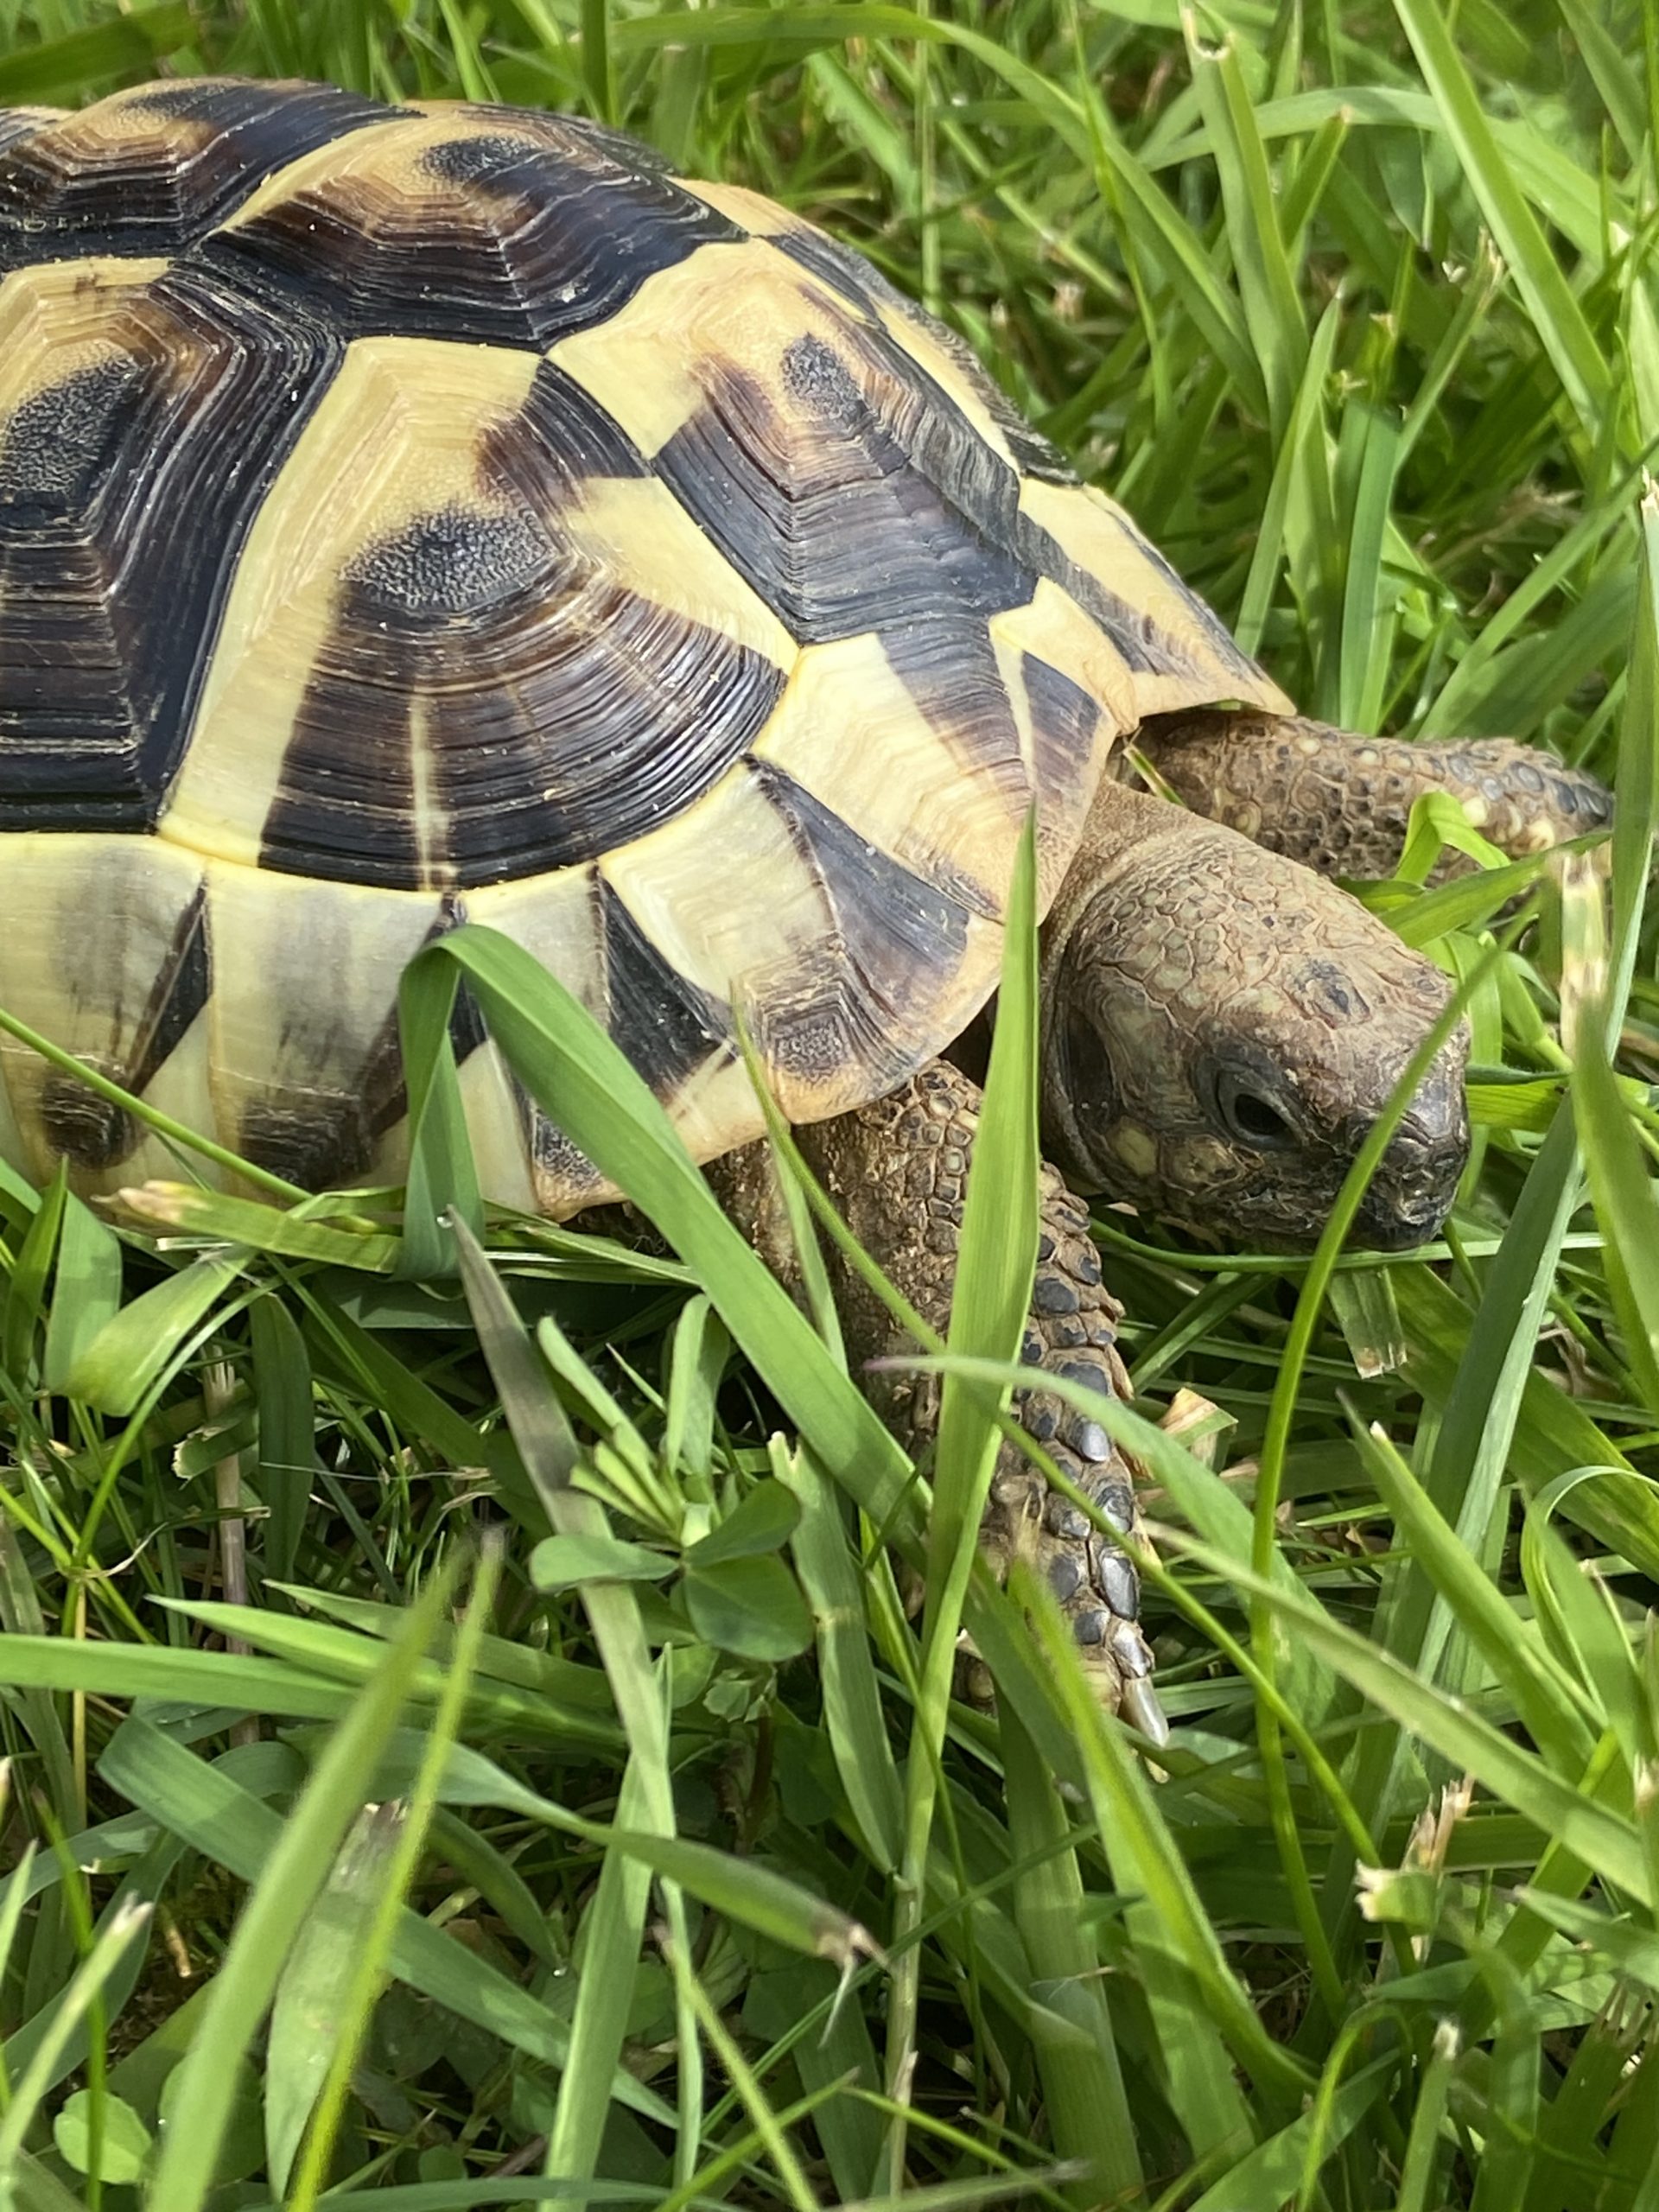 Hermann’s female garden tortoise